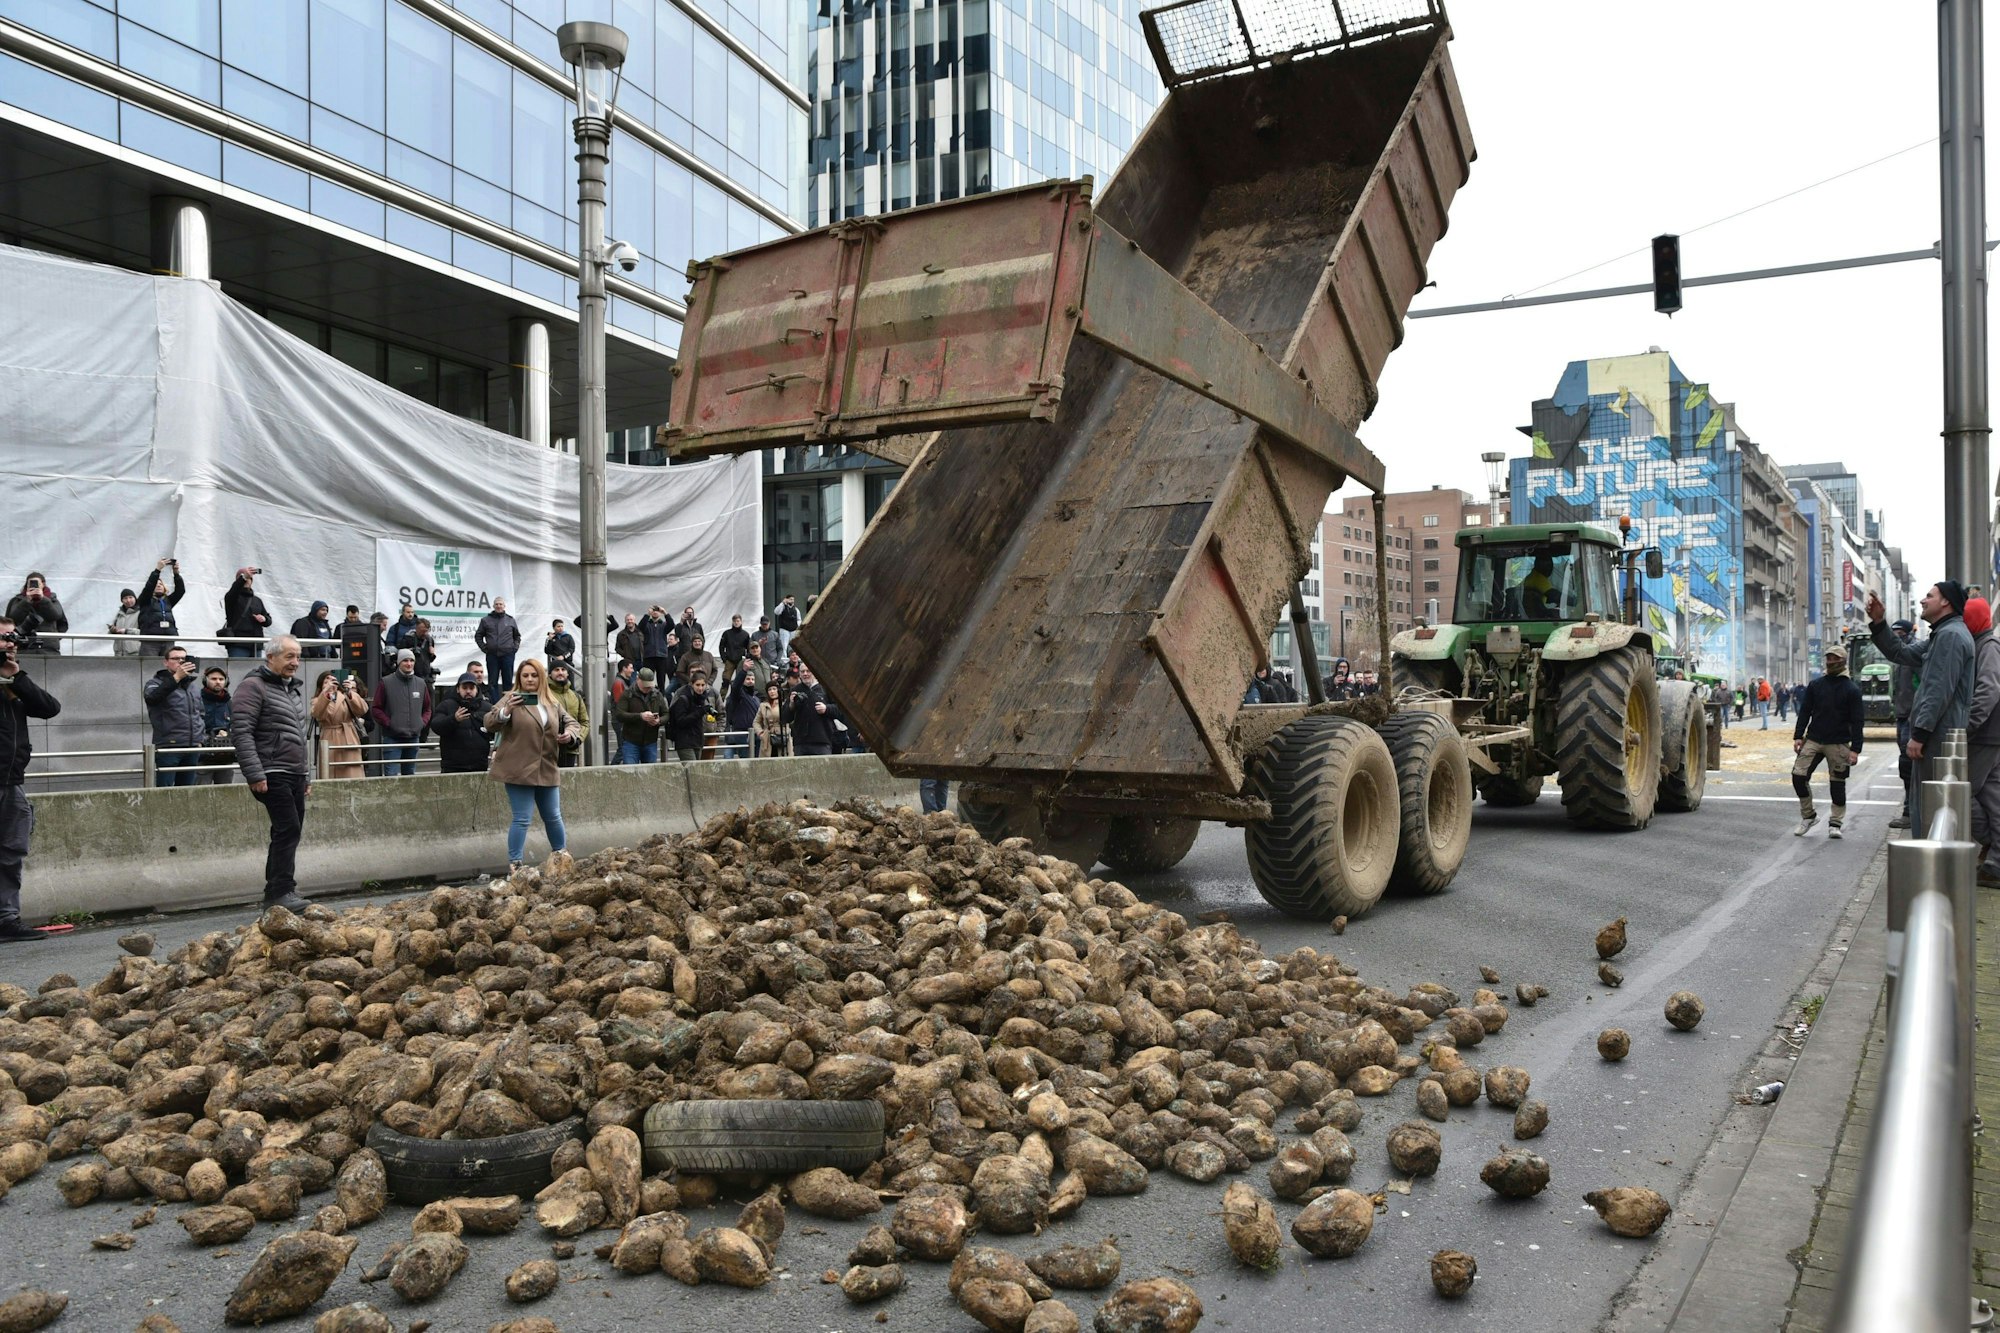 Landwirte kippen aus Protest eine Ladung Kartoffeln auf einer Hauptstraße ab